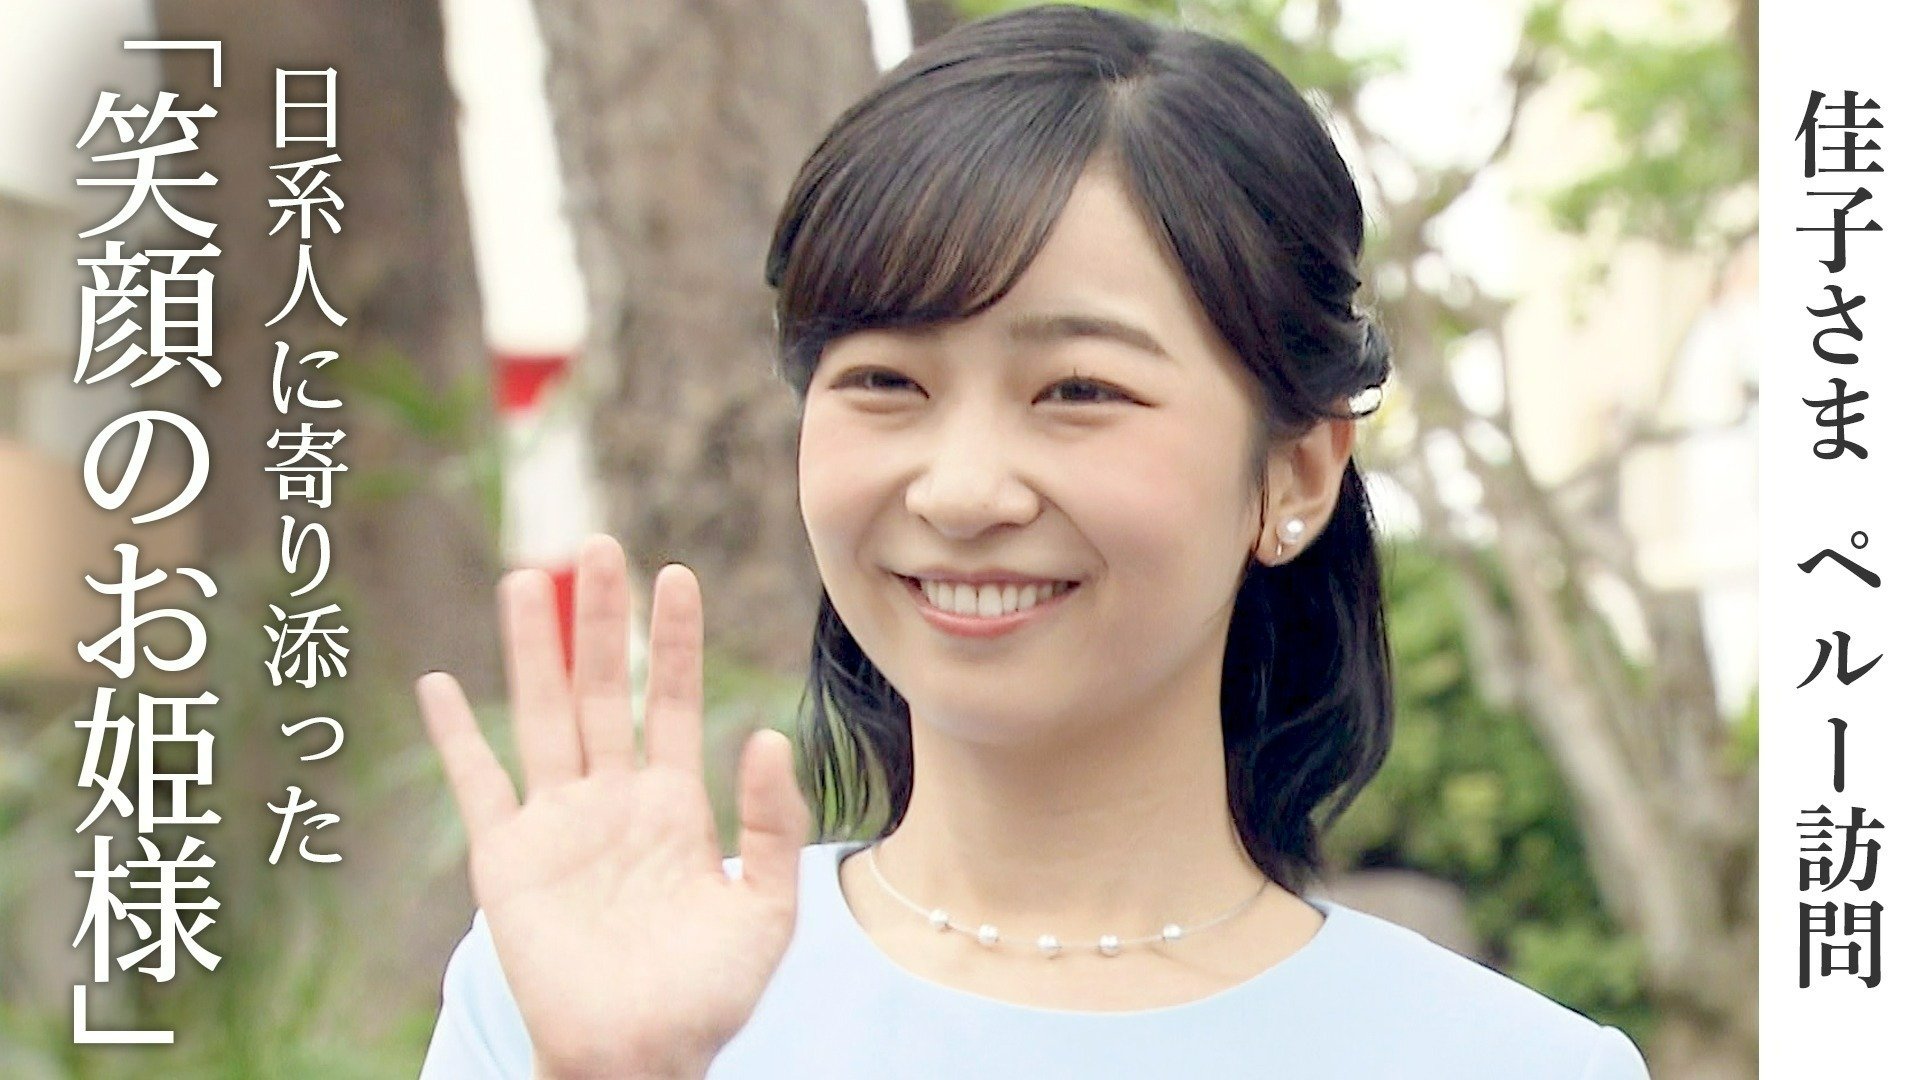 佳子さまペルー訪問 日系人に寄り添った「笑顔のお姫様」 | TBS NEWS DIG